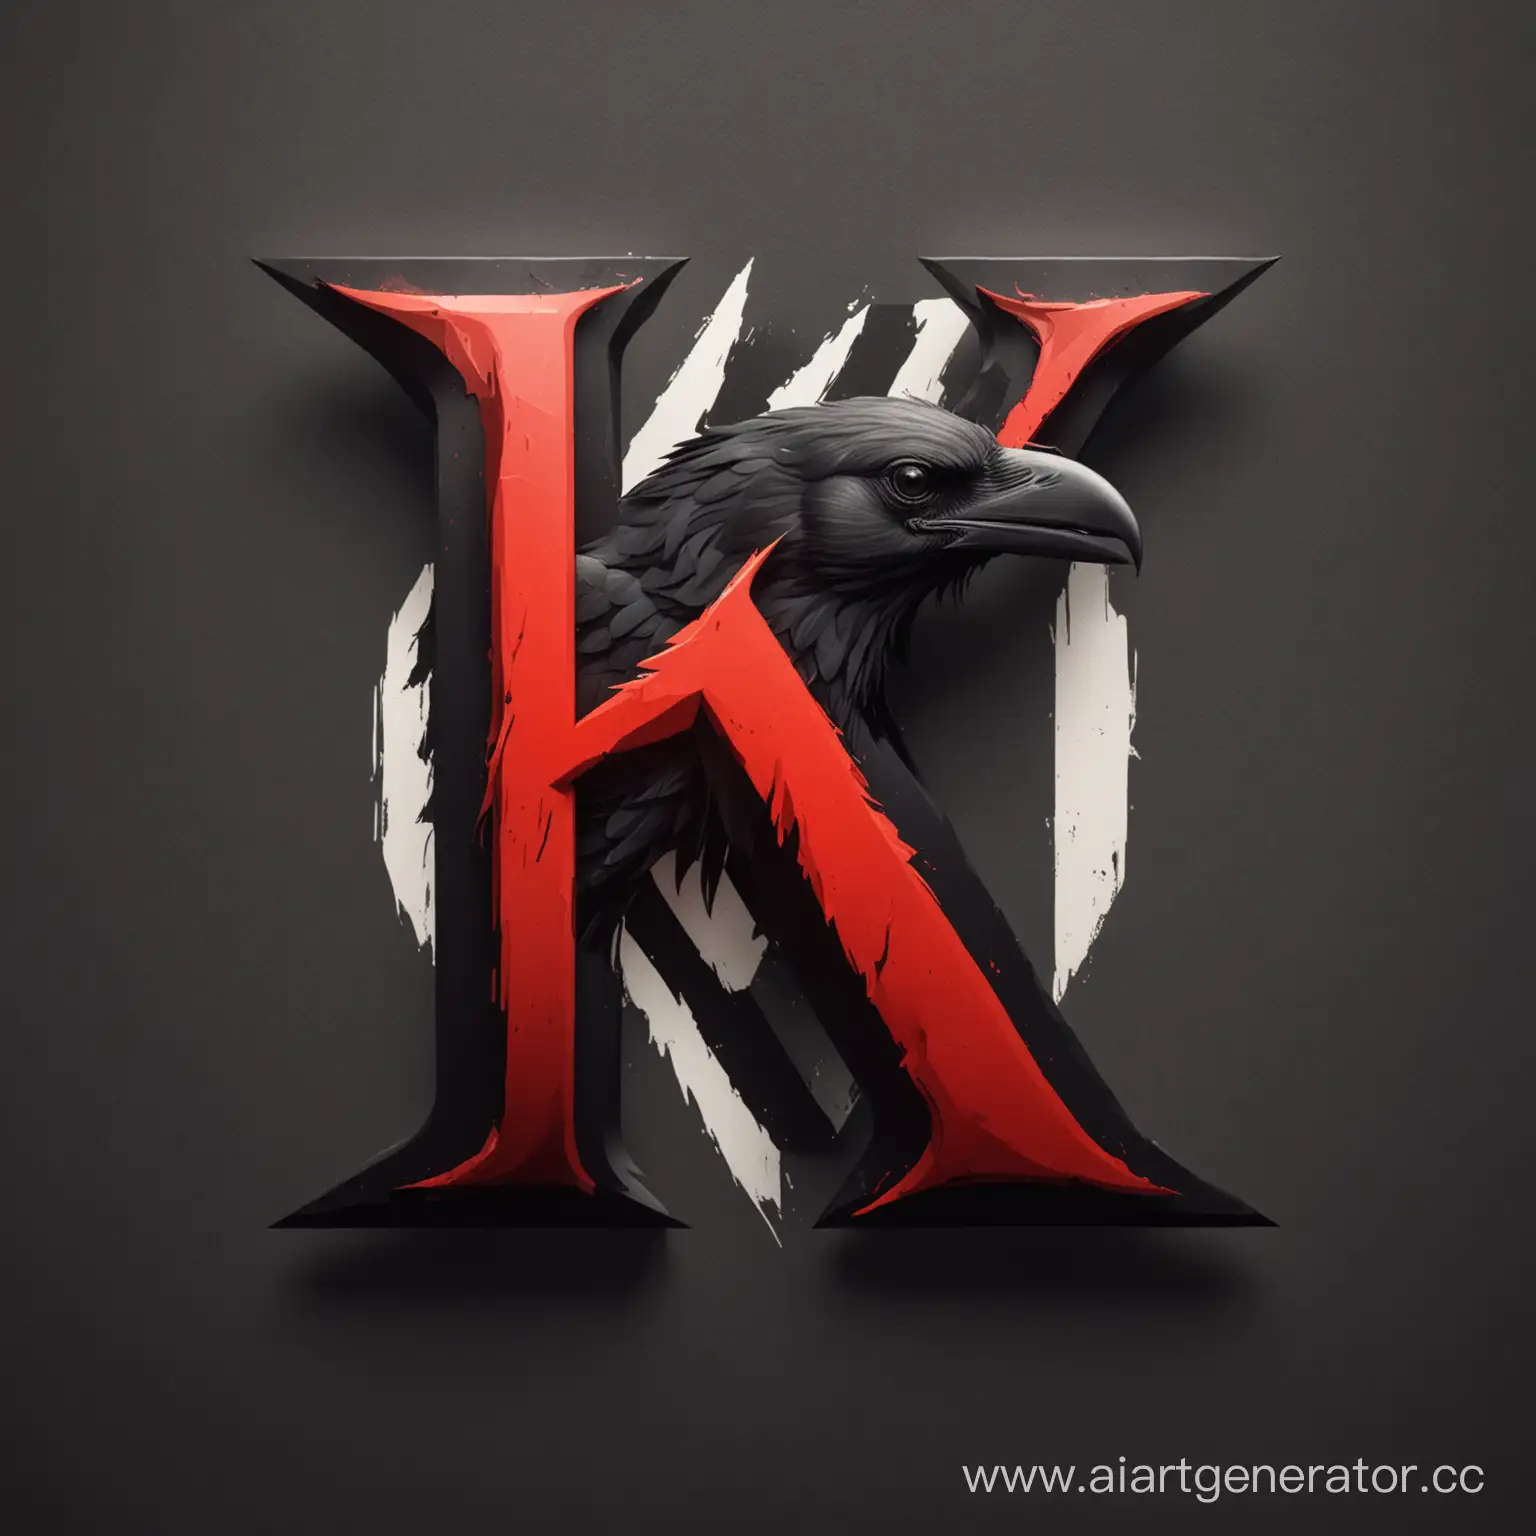 Raven-Emblem-Striking-Red-and-Black-Logo-with-Letter-K